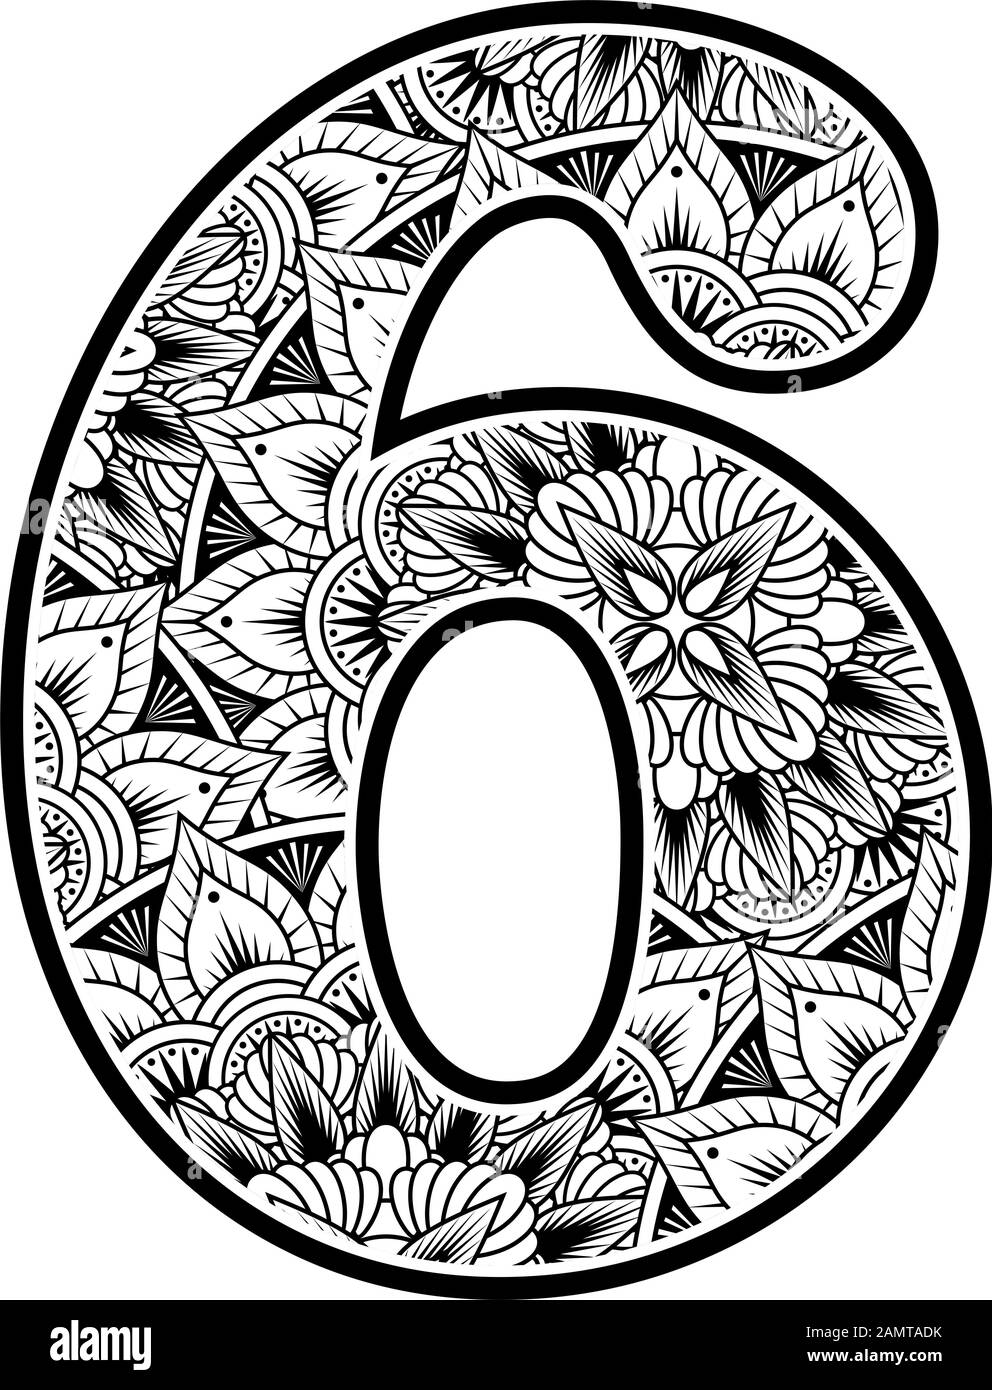 Nummer 6 mit abstrakten Blumenornamenten in schwarz-weiß. Design inspiriert von Mandala-Kunststil zum Färben. Isoliert auf weißem Hintergrund Stock Vektor